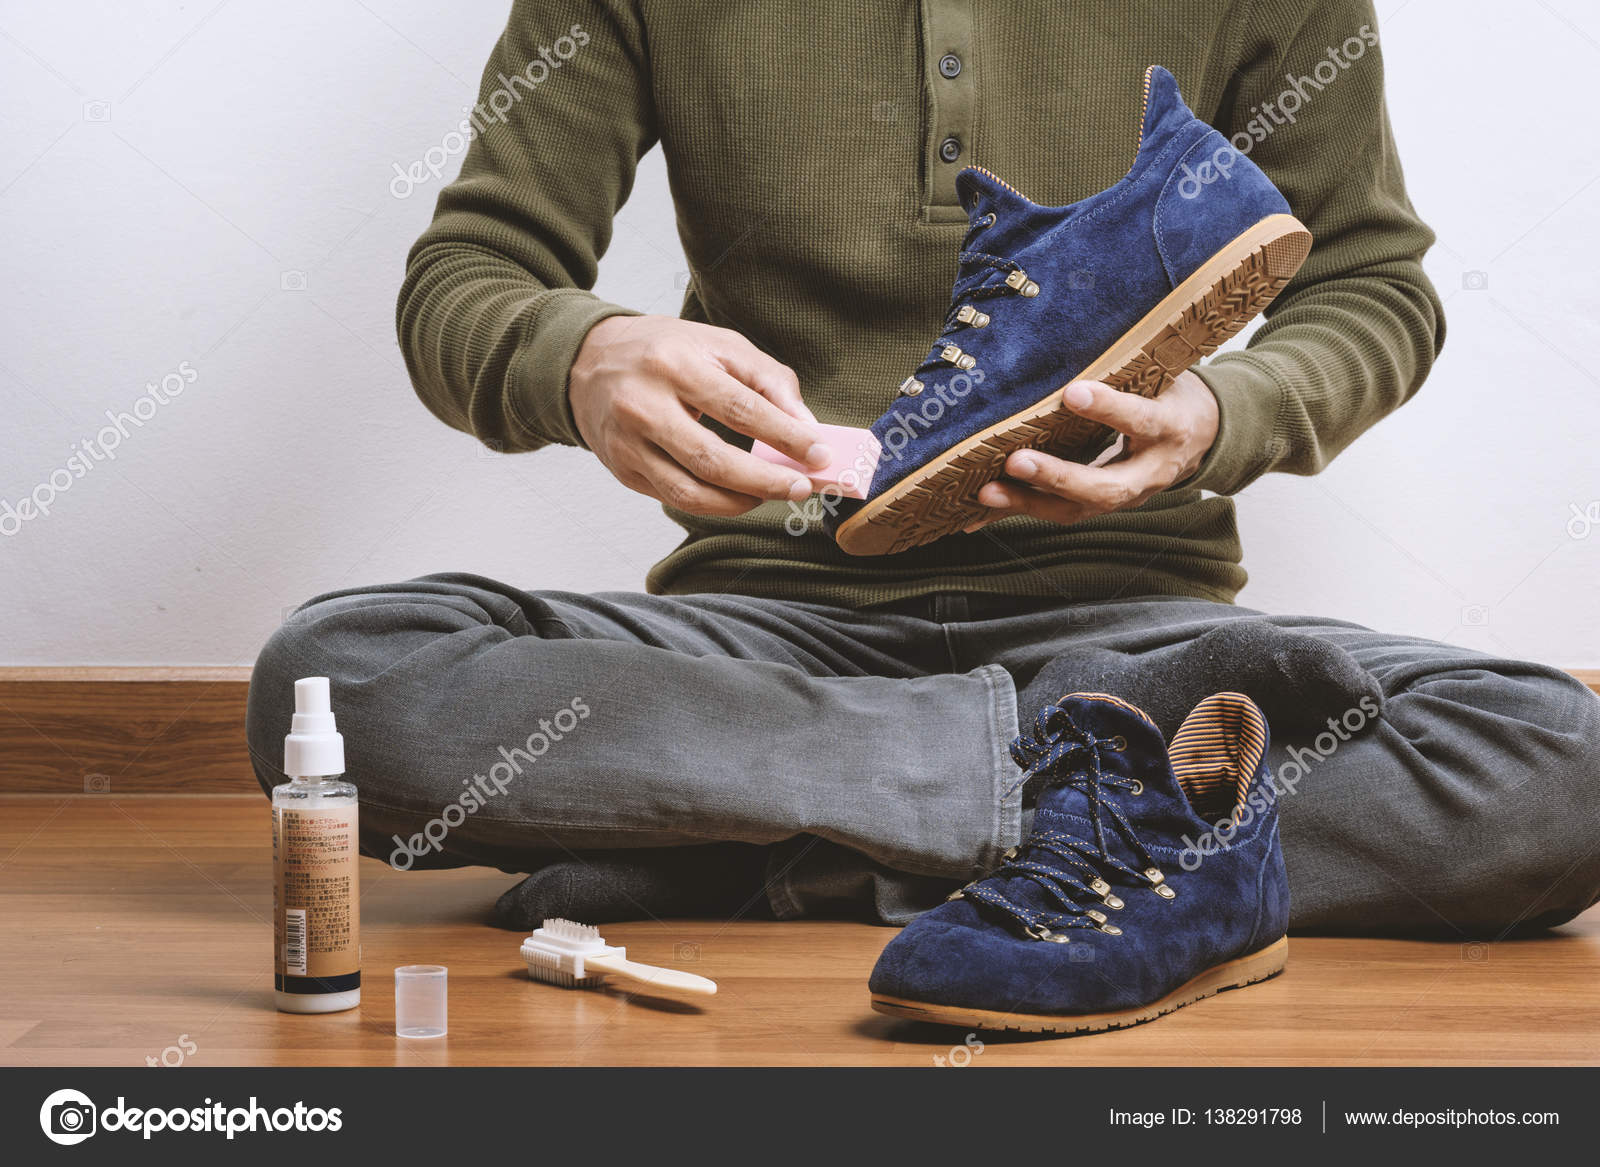 Как в домашних условиях почистить замшевые мокасины: Как чистить замшевую обувь в домашних условиях